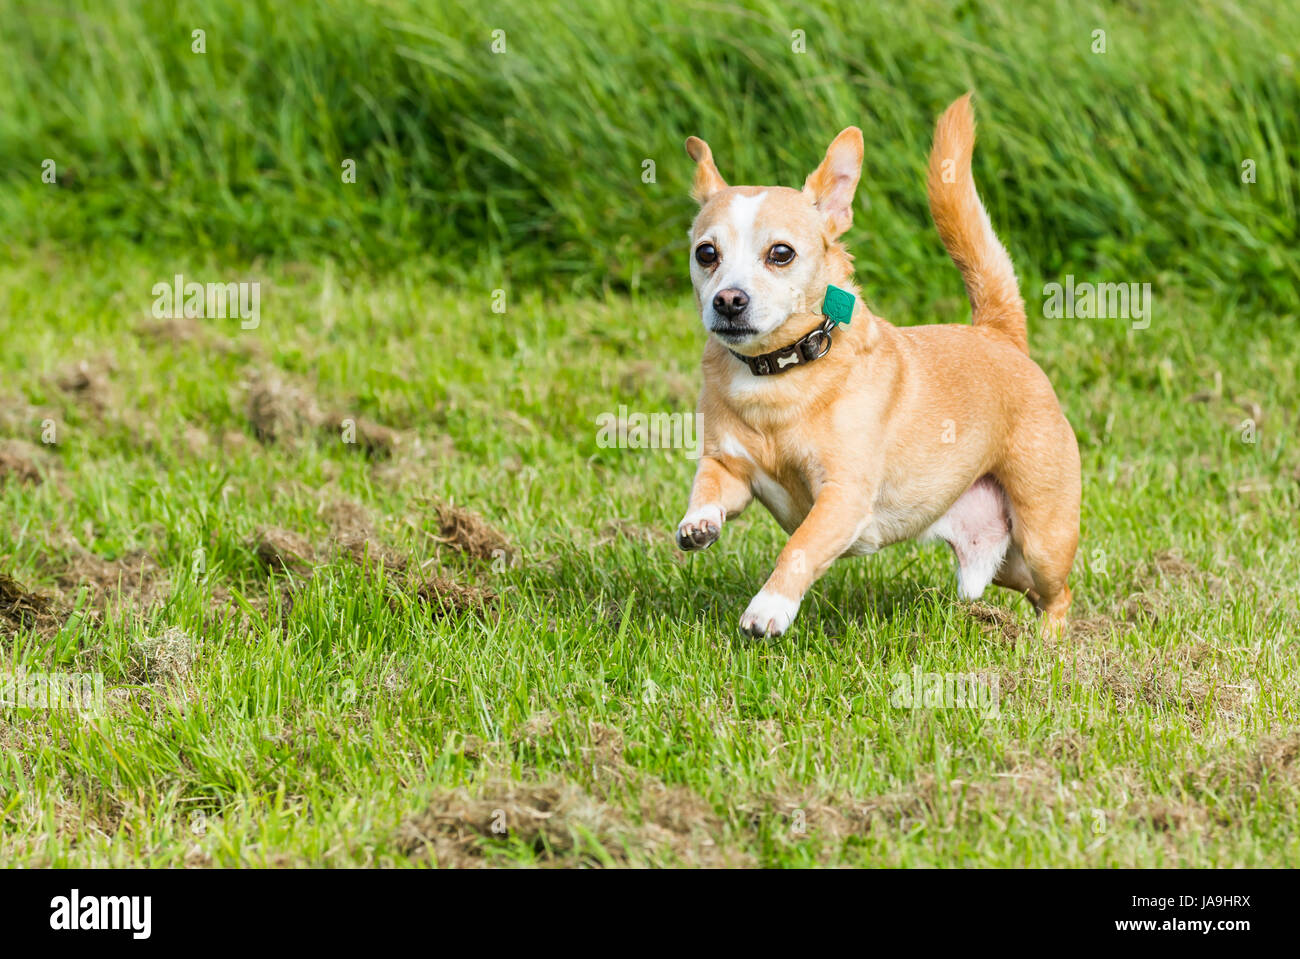 Petit chien qui court sur l'herbe. Il s'agit d'un croisement d'un Chihuahua et un Jack Russell Terrier. Banque D'Images